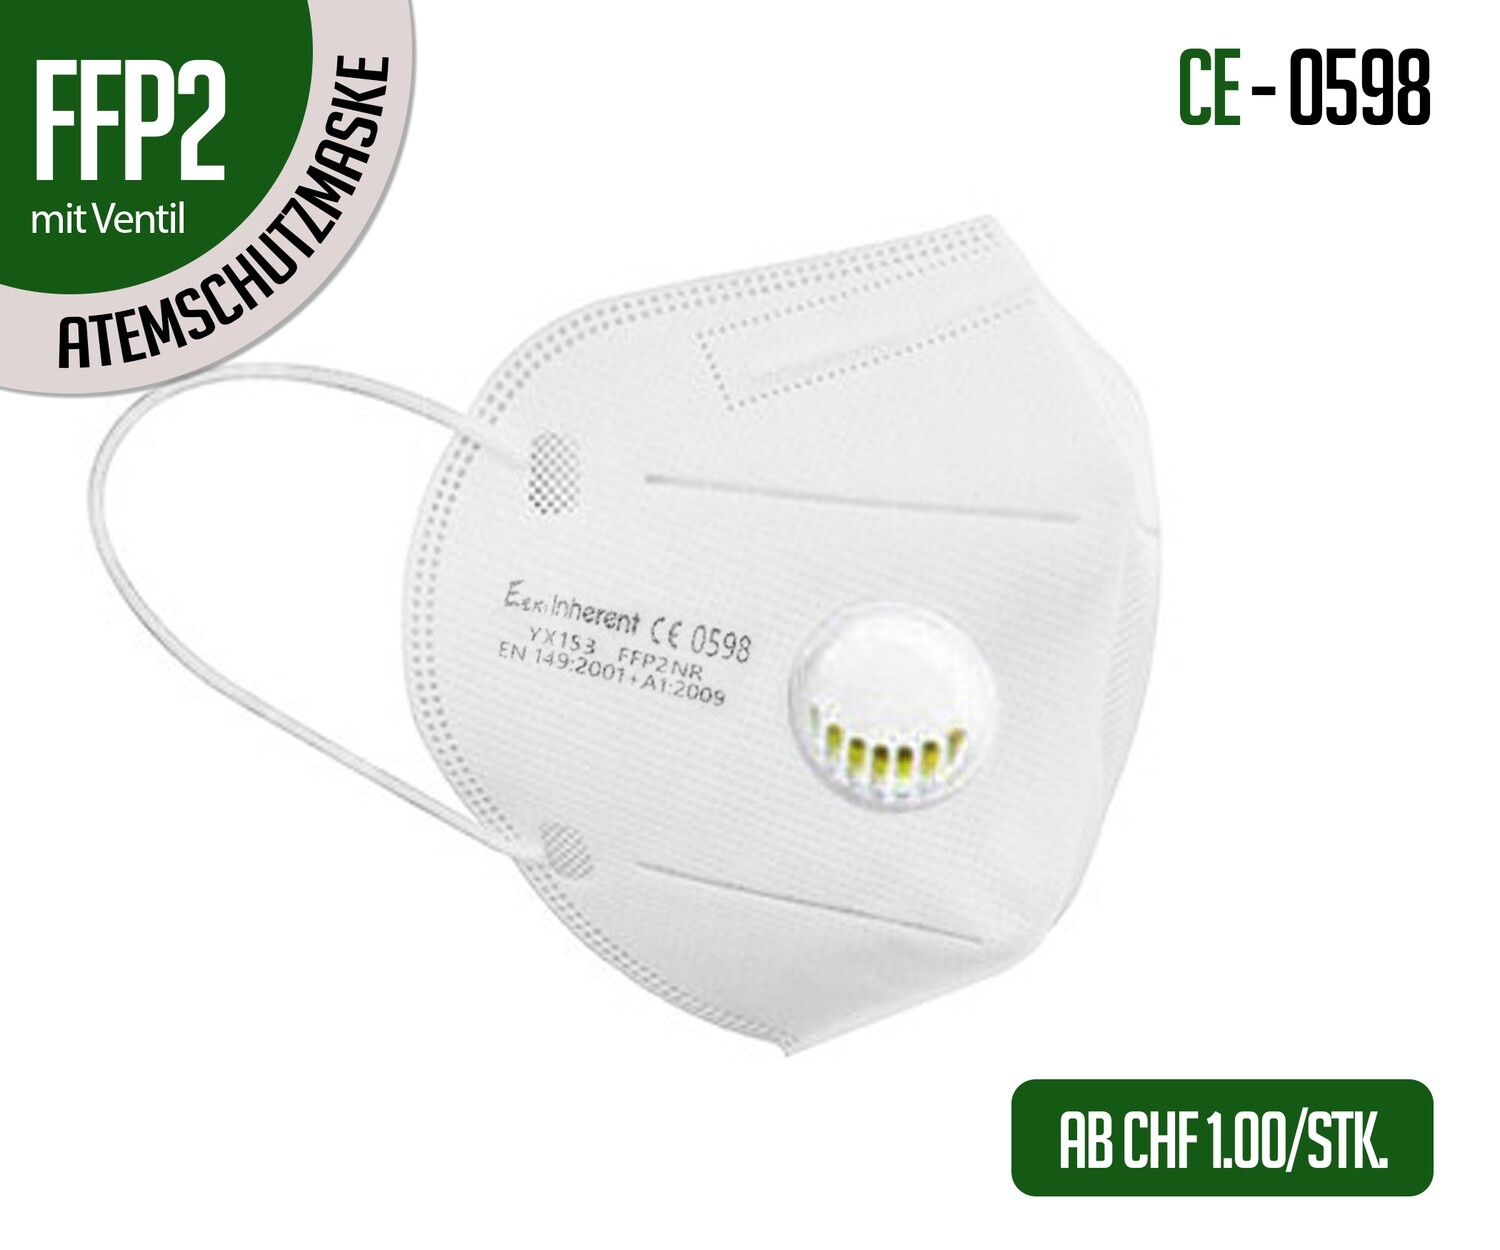 Mascherina respiratoria di protezione FFP2 con valvola - confezione da 10 pz.